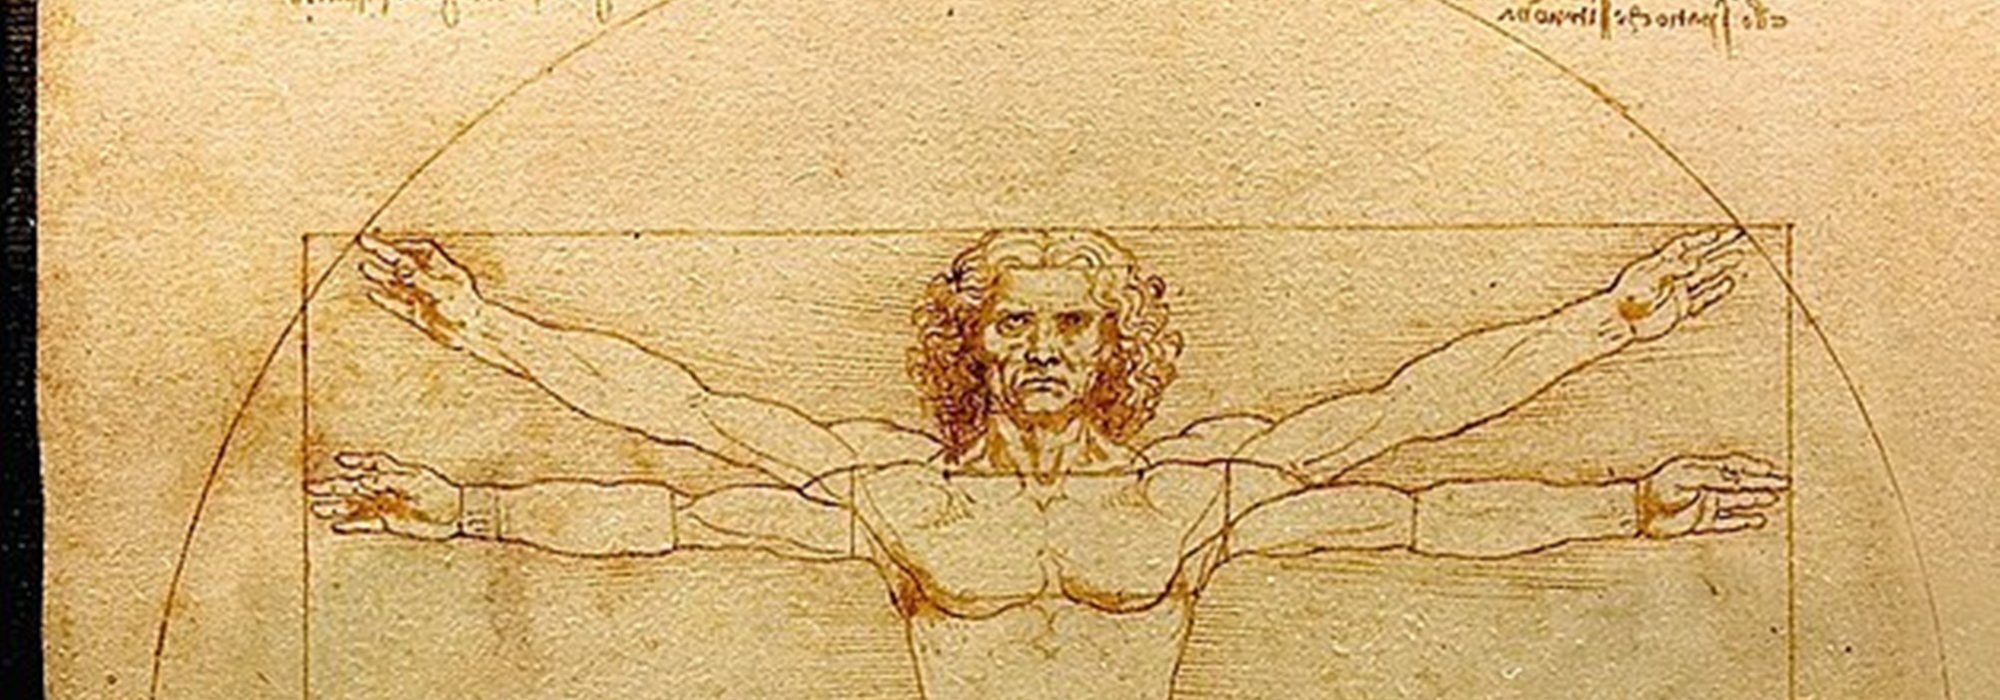 Imagem: O Homem Vitruviano (Da Vinci, detalhe)